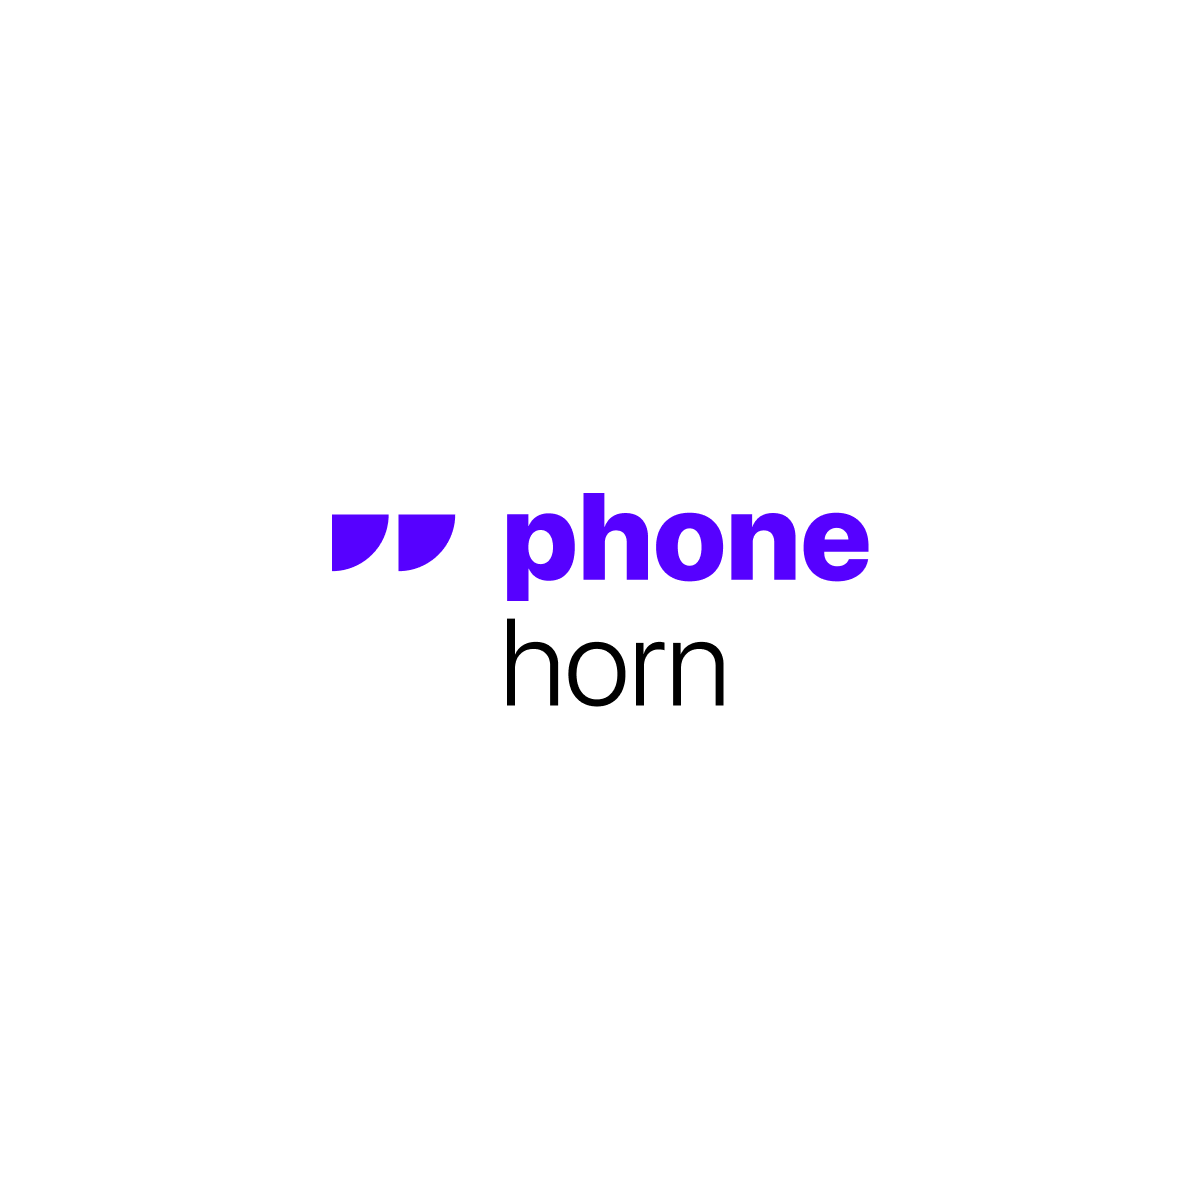 PhoneHorn.com logo